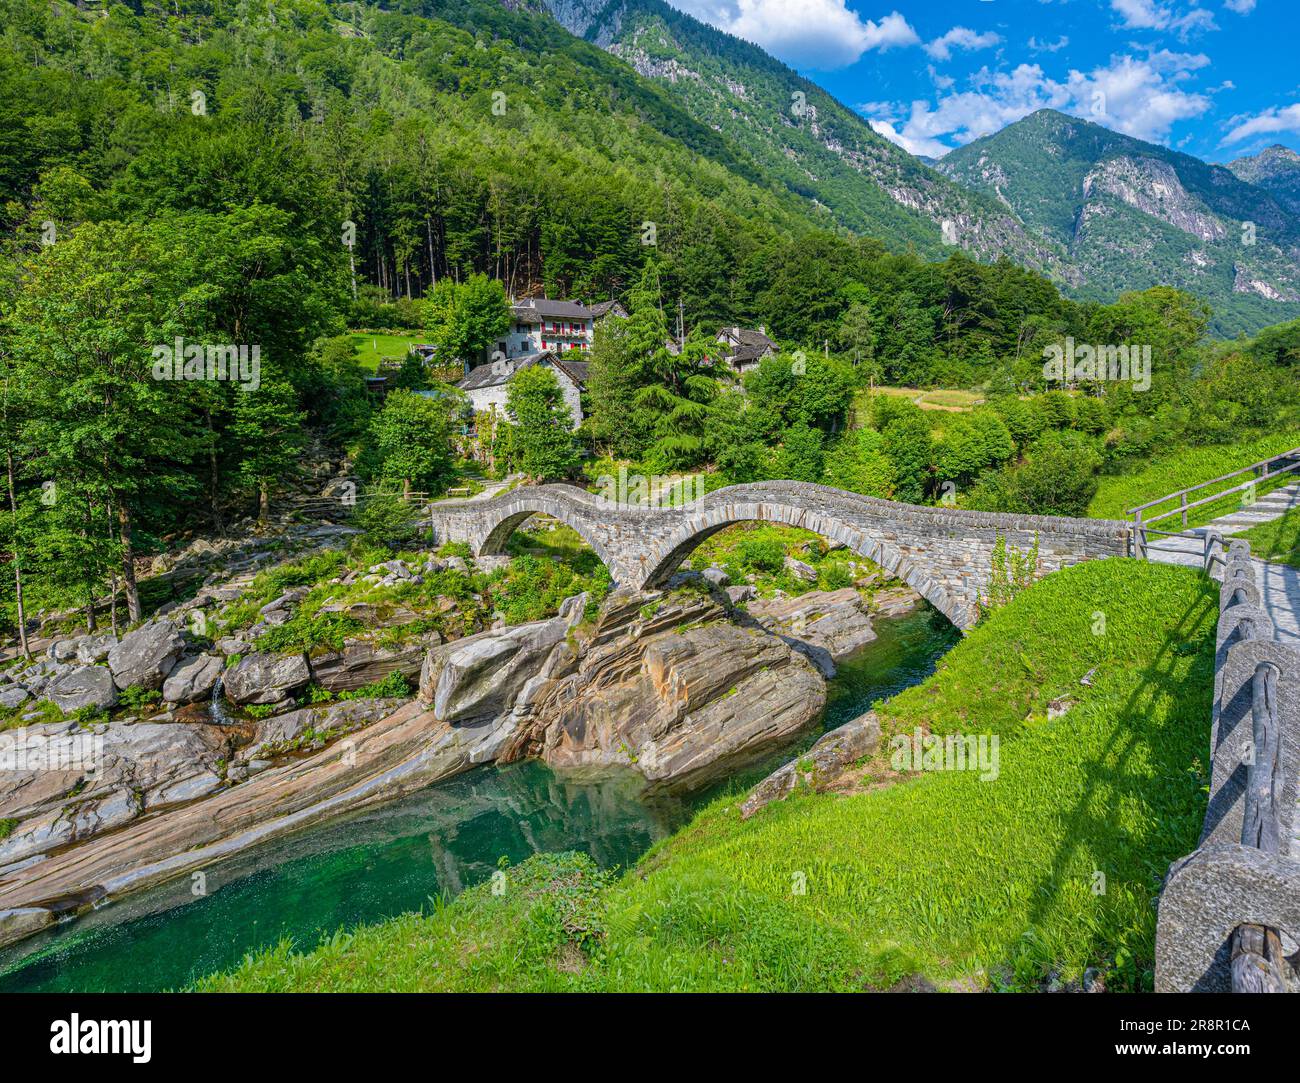 Roman bridge (Ponte dei Salti) crossing the Verzasca River at Lavertezzo in the Verzasca Valley, Canton of Ticino, Switzerland, Europe Stock Photo